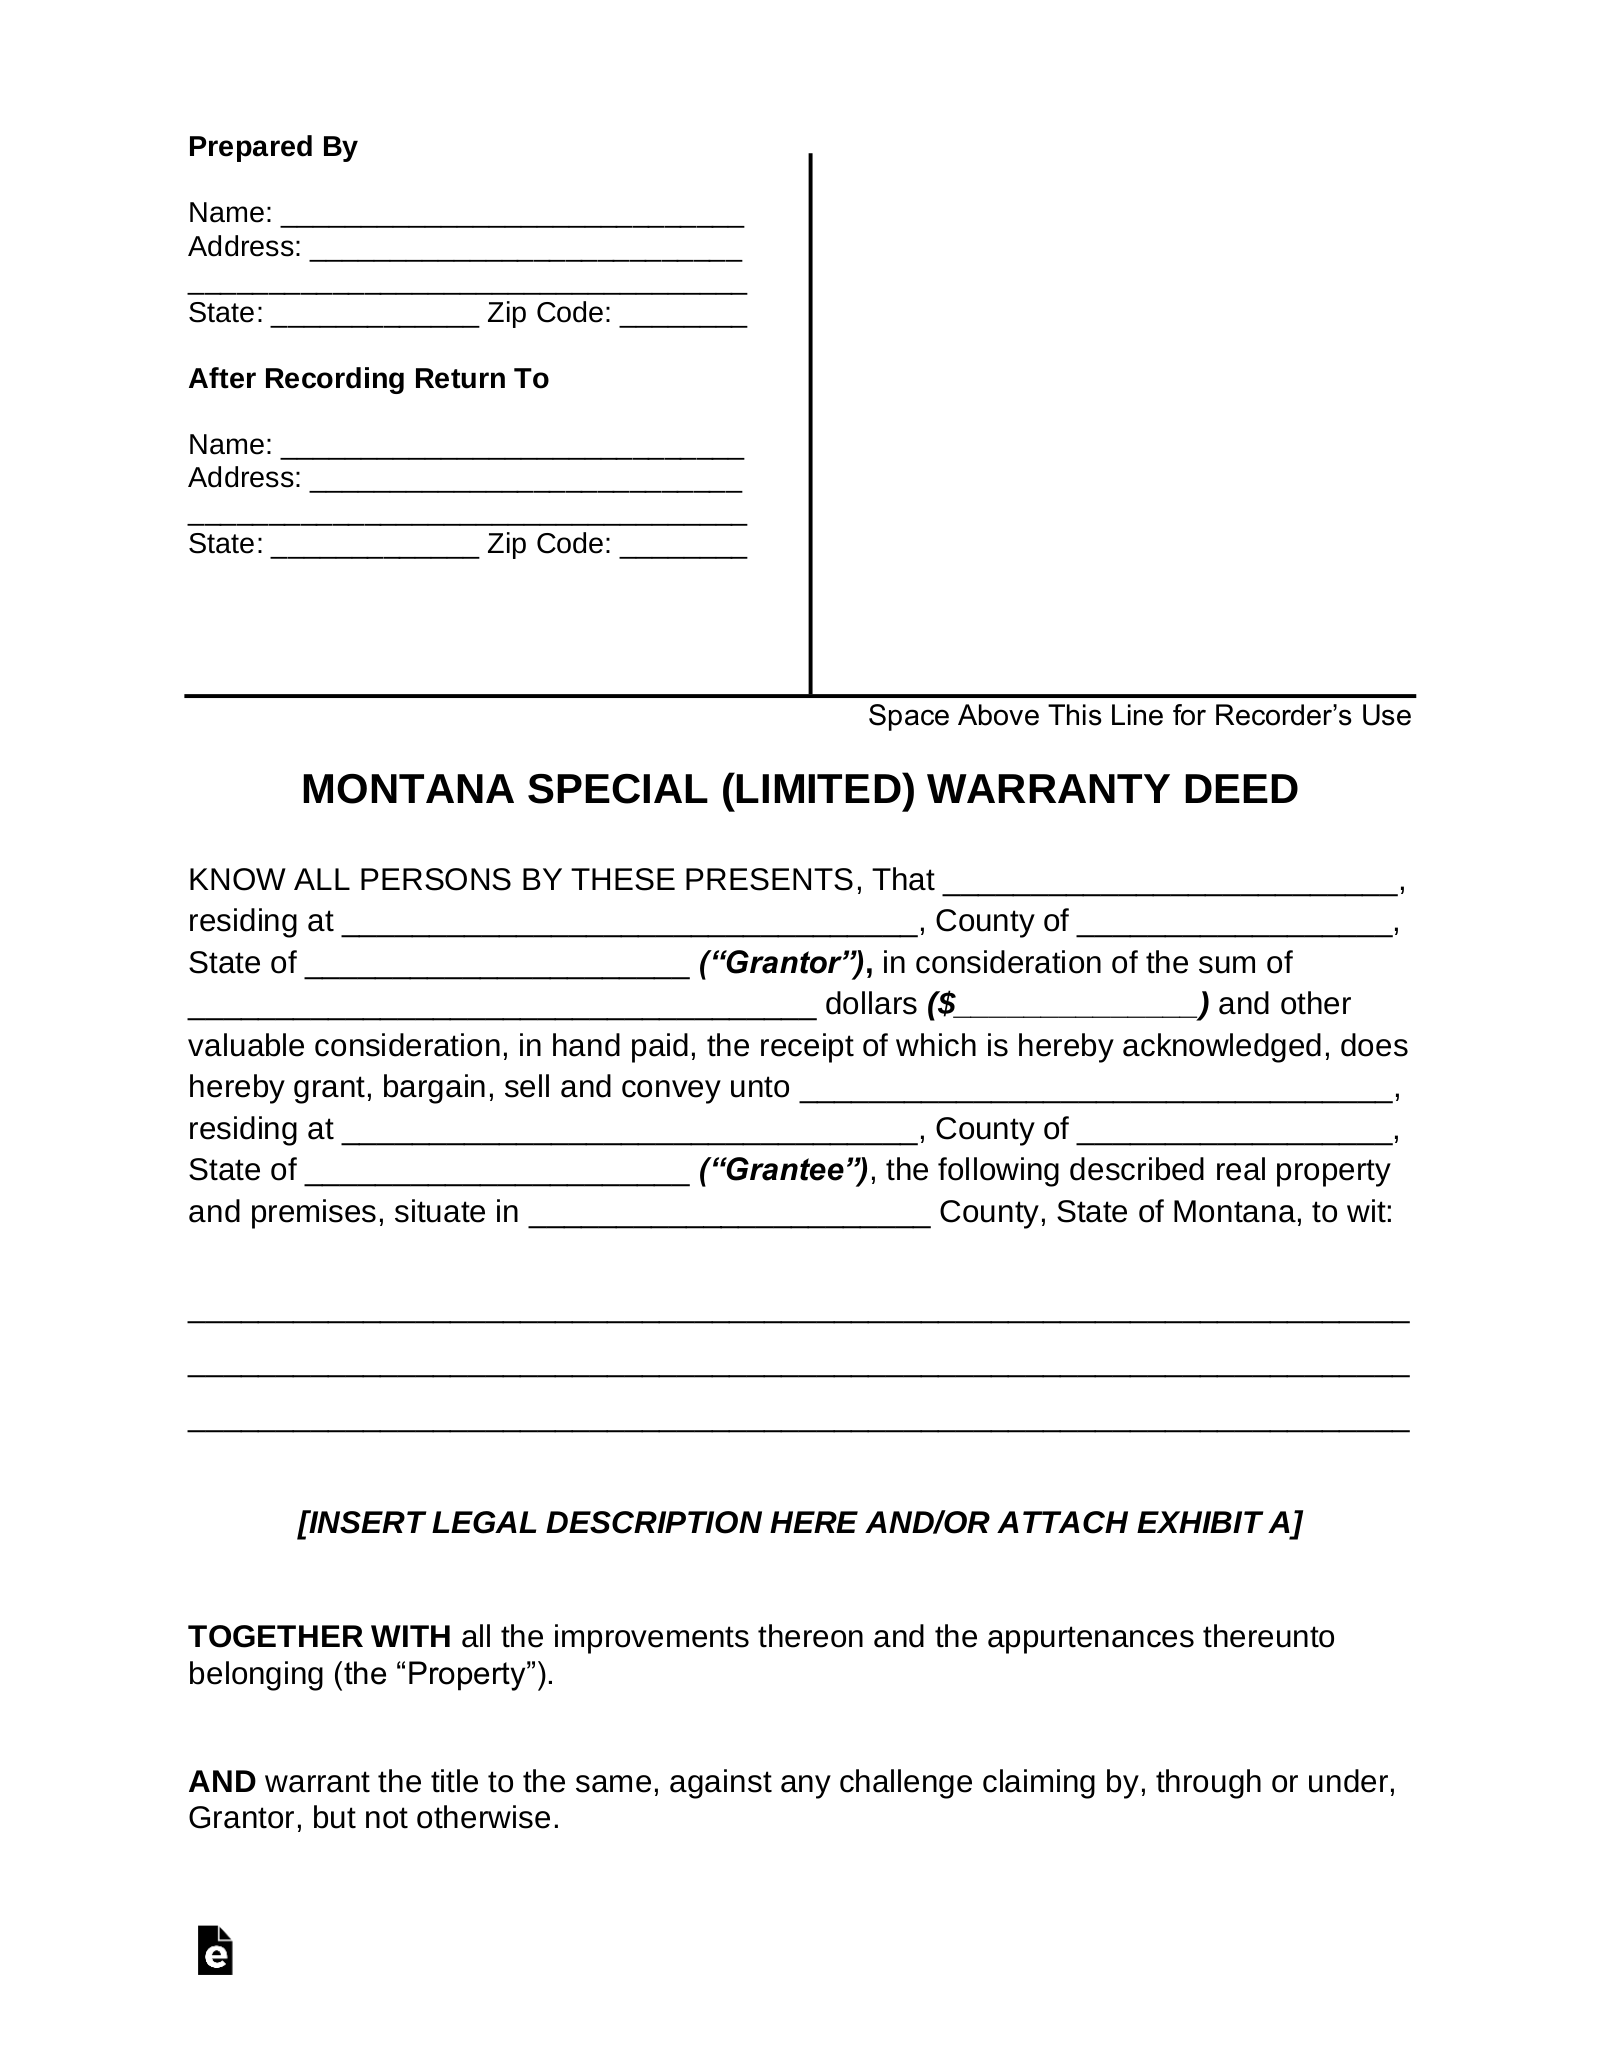 Montana Special Warranty Deed Form